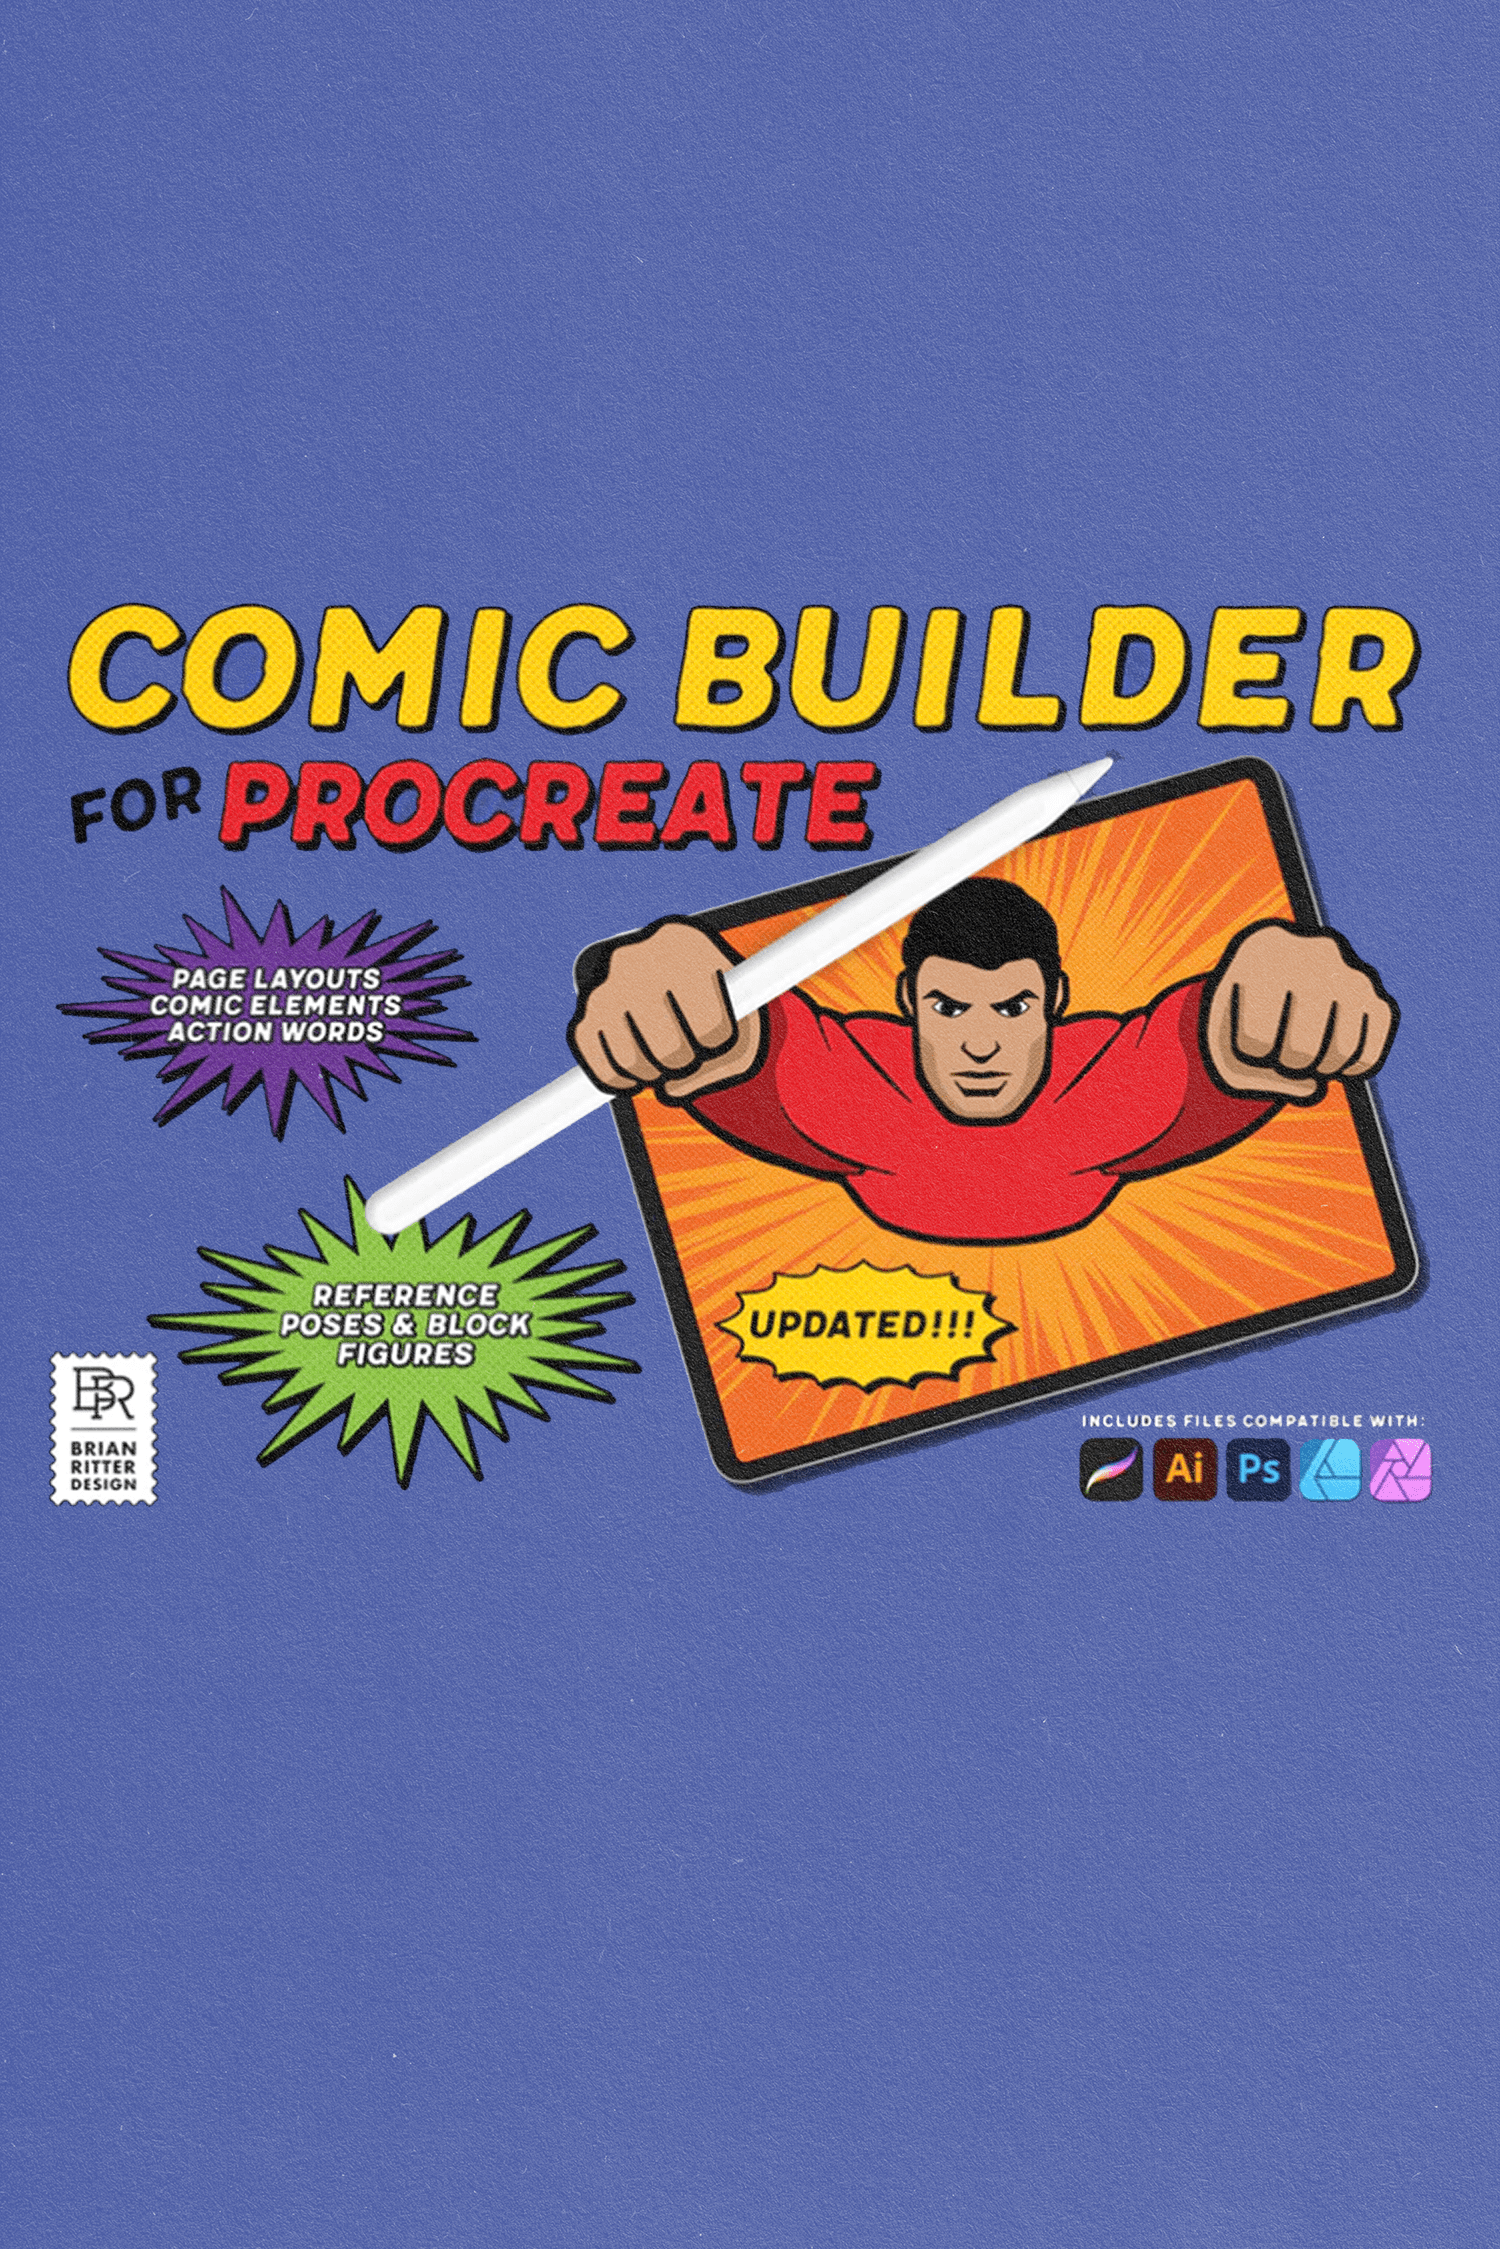 Comic Builder Toolkit door Brian Ritter Design